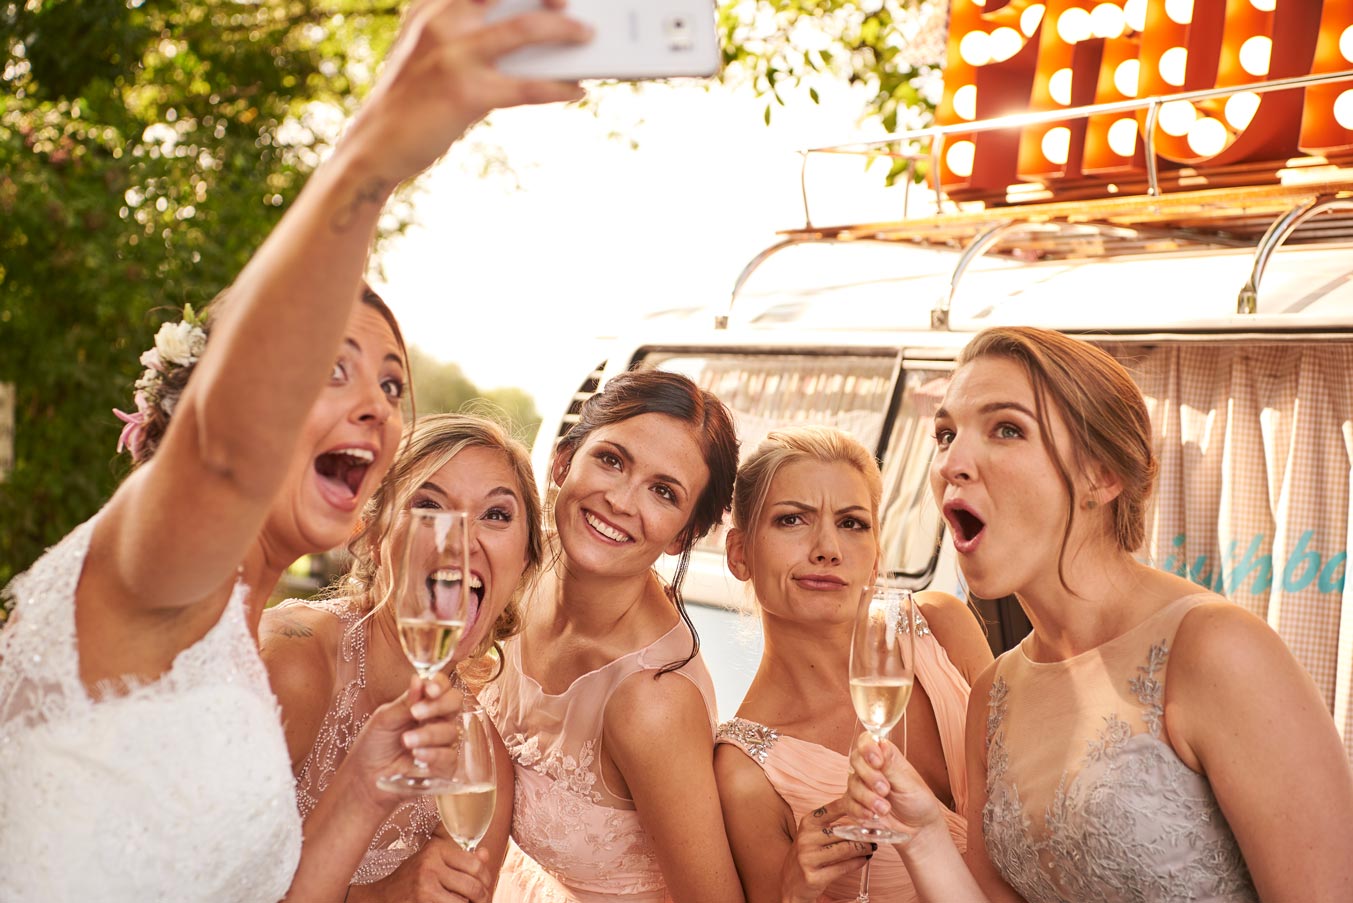 Selfie an Hochzeit, yes or no?